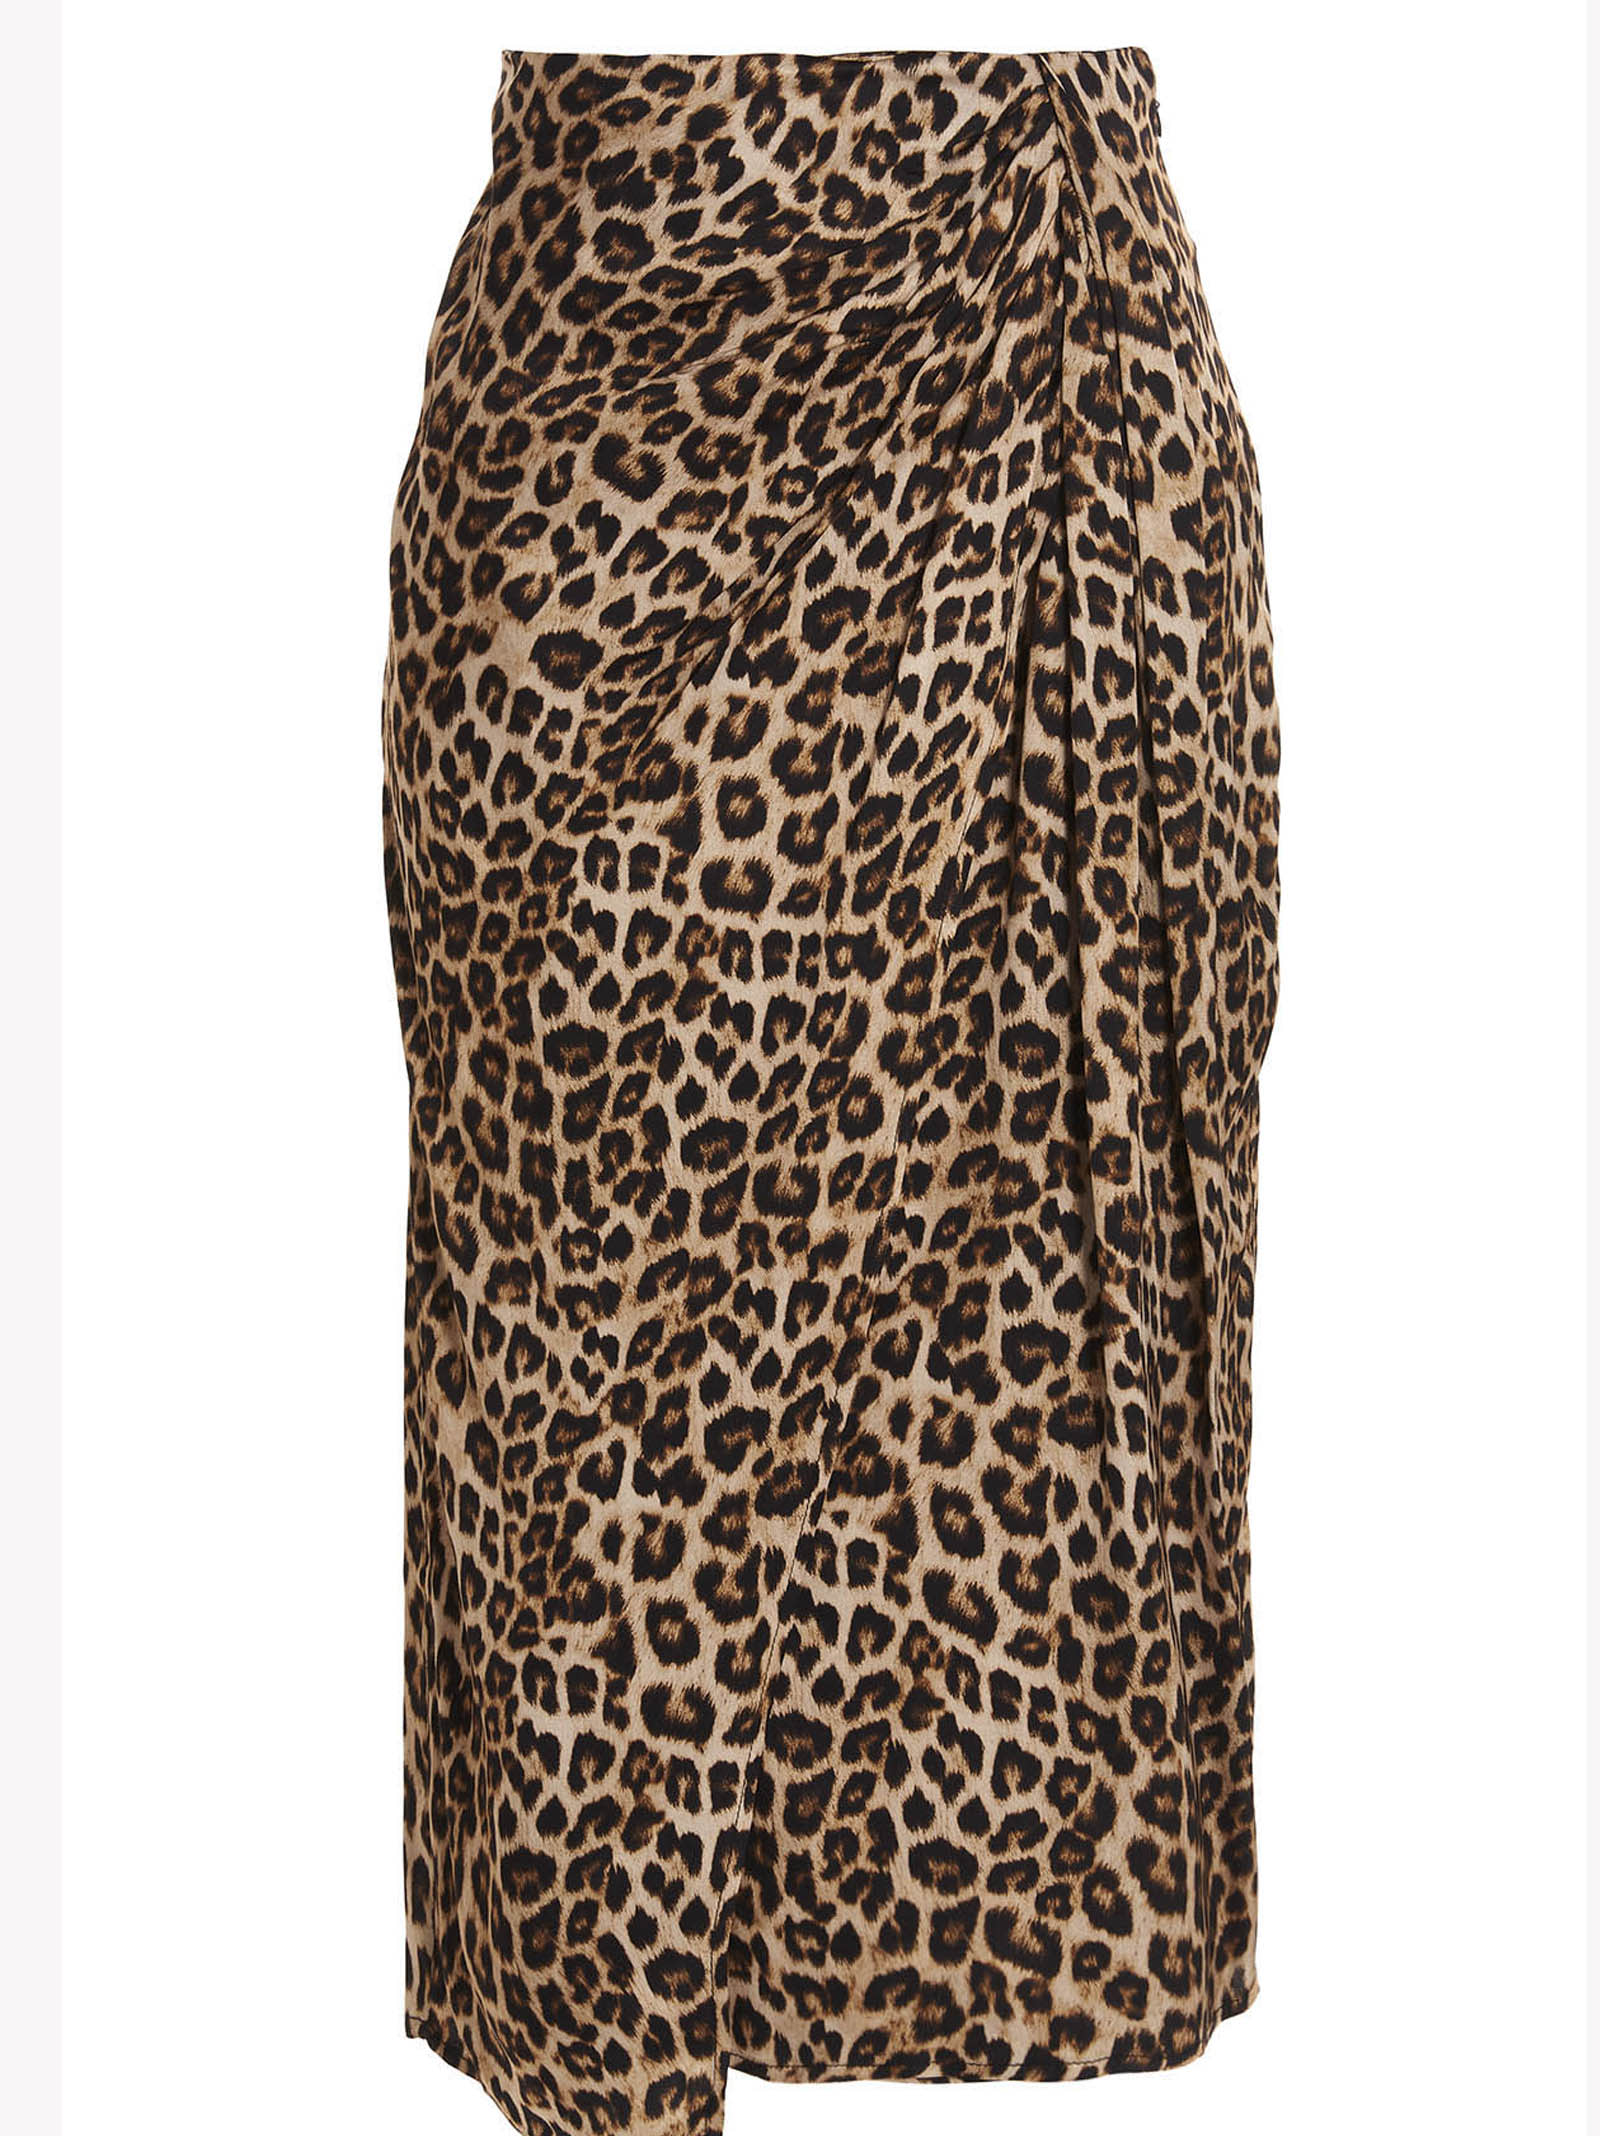 TwinSet Leopard Skirt